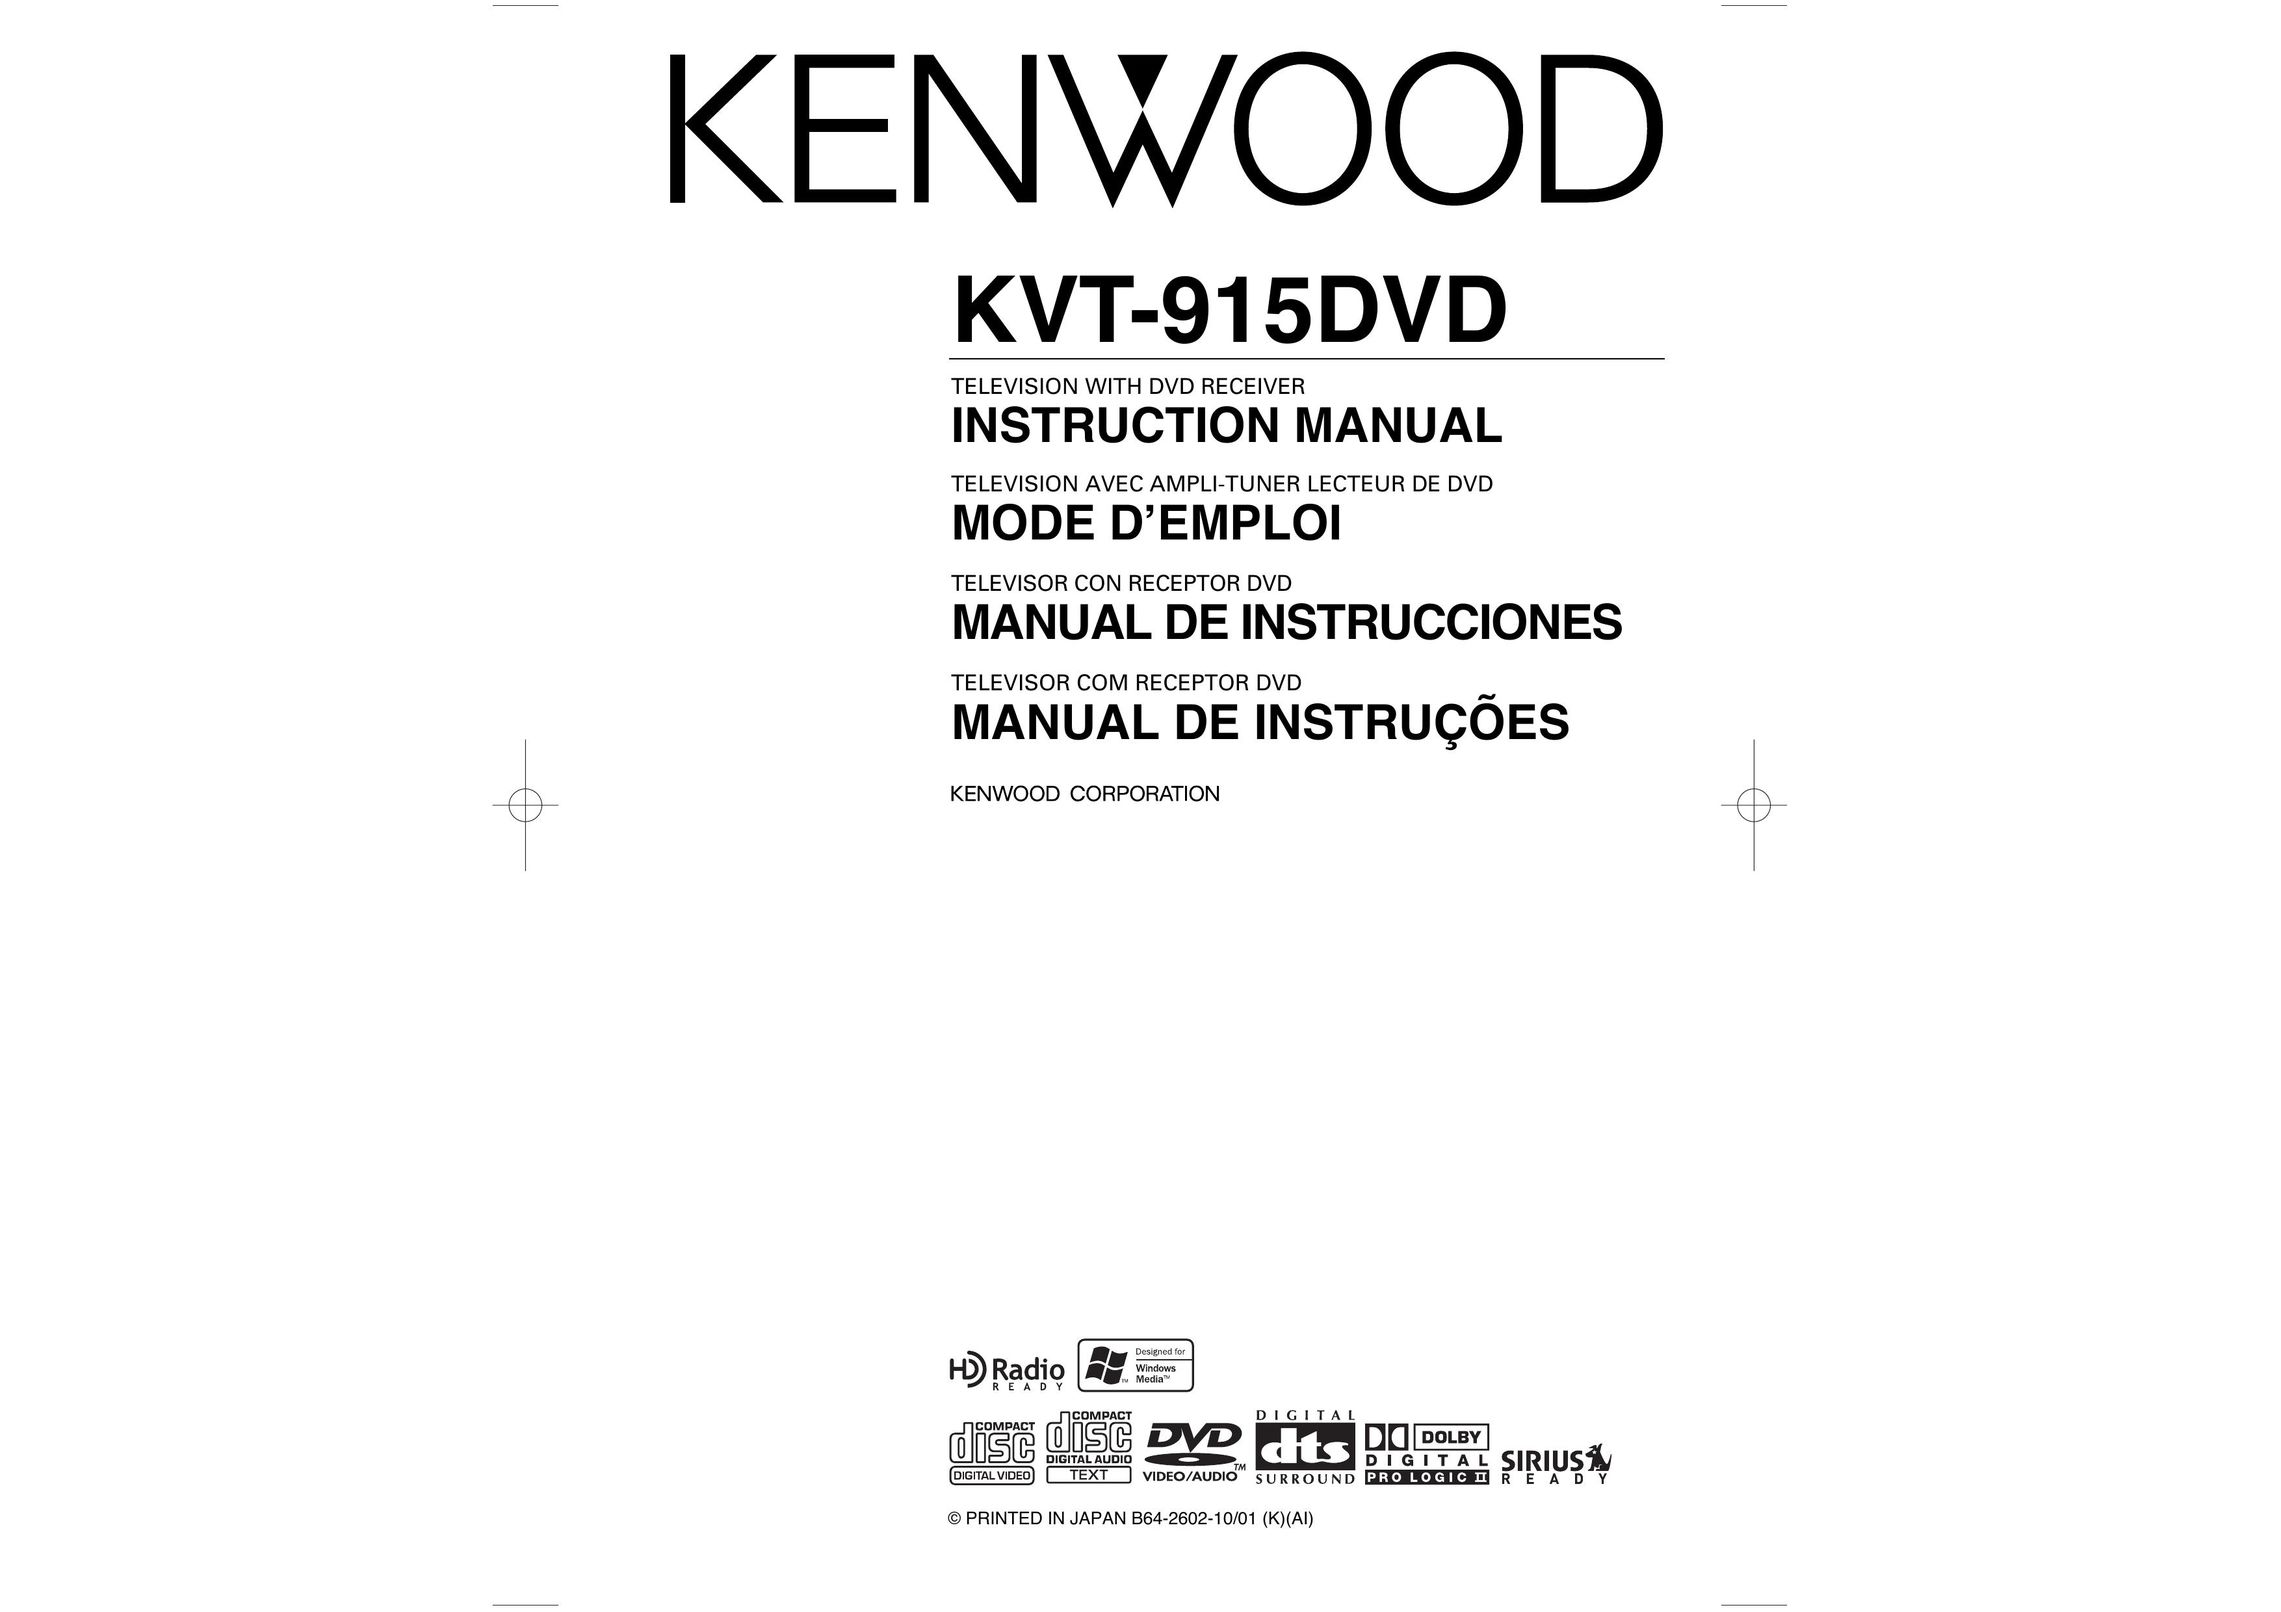 Kenwood KVT-915DVD DVD Player User Manual